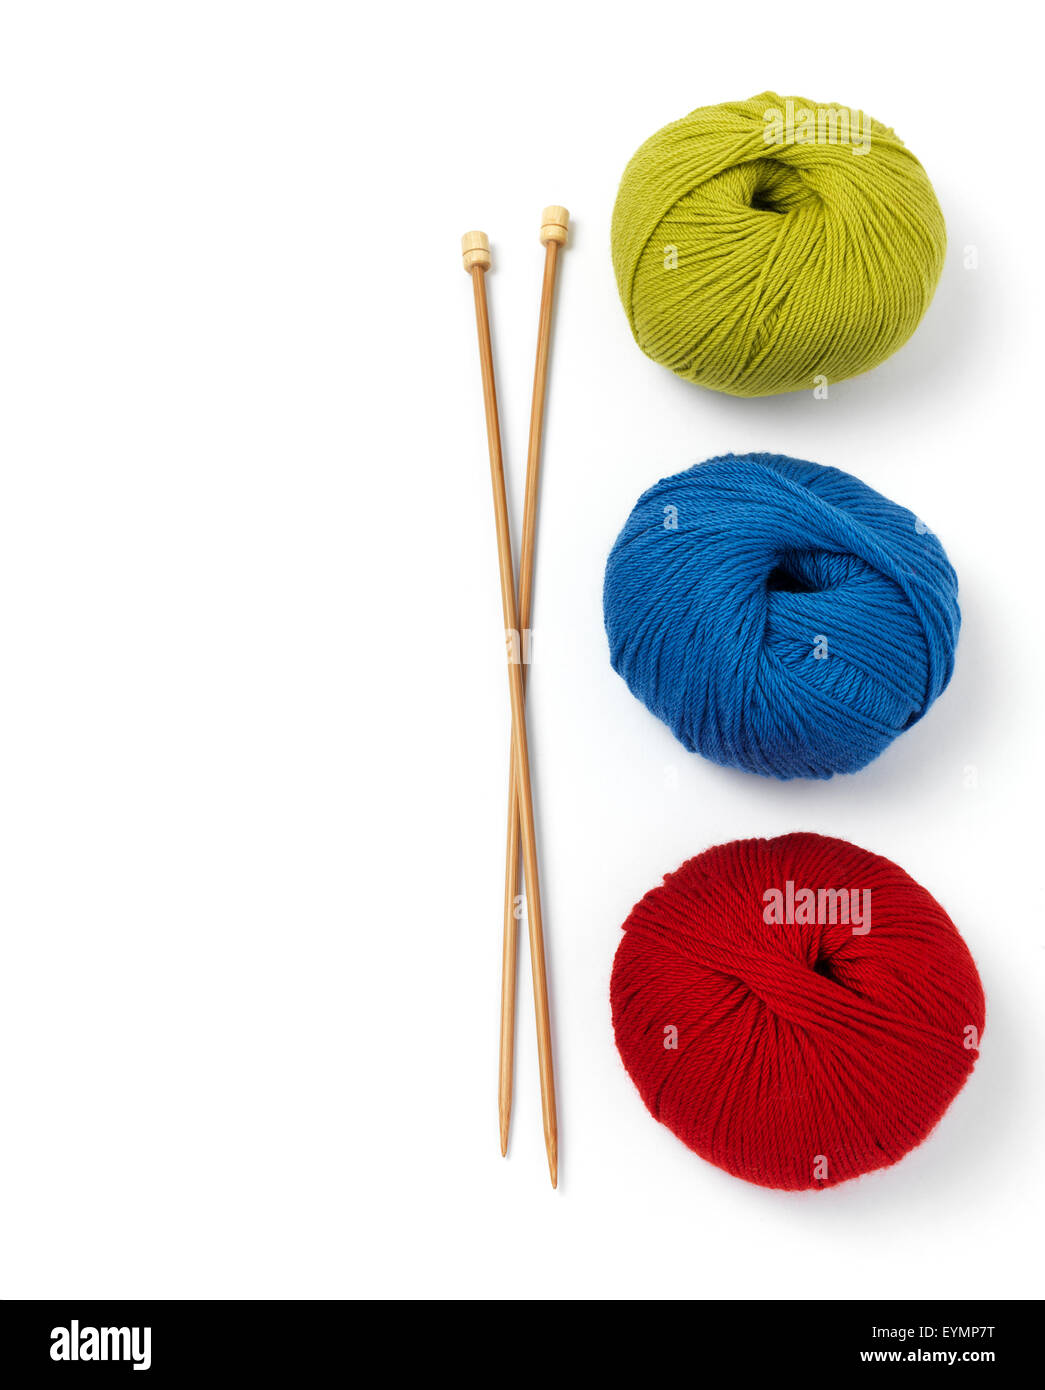 Bolas de lana y agujas de tejer Foto de stock